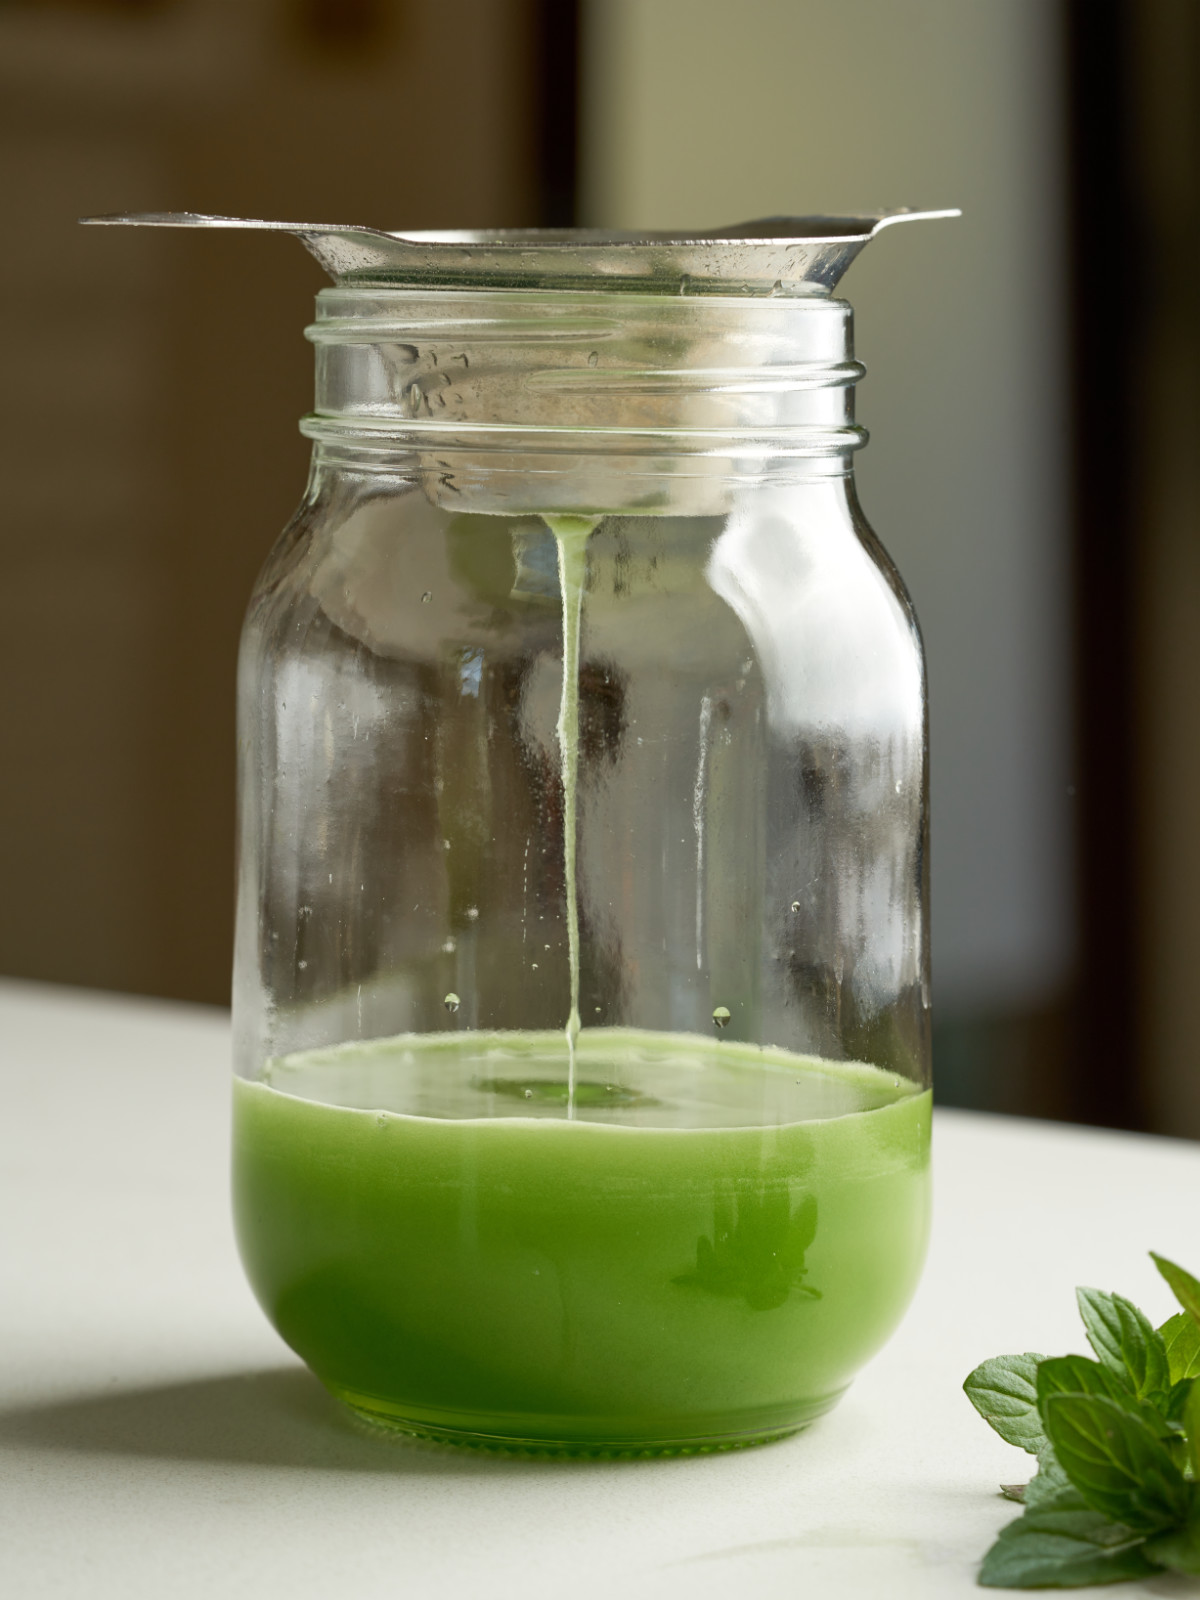 Green liquid drizzling through a strainer into a glass mason jar.